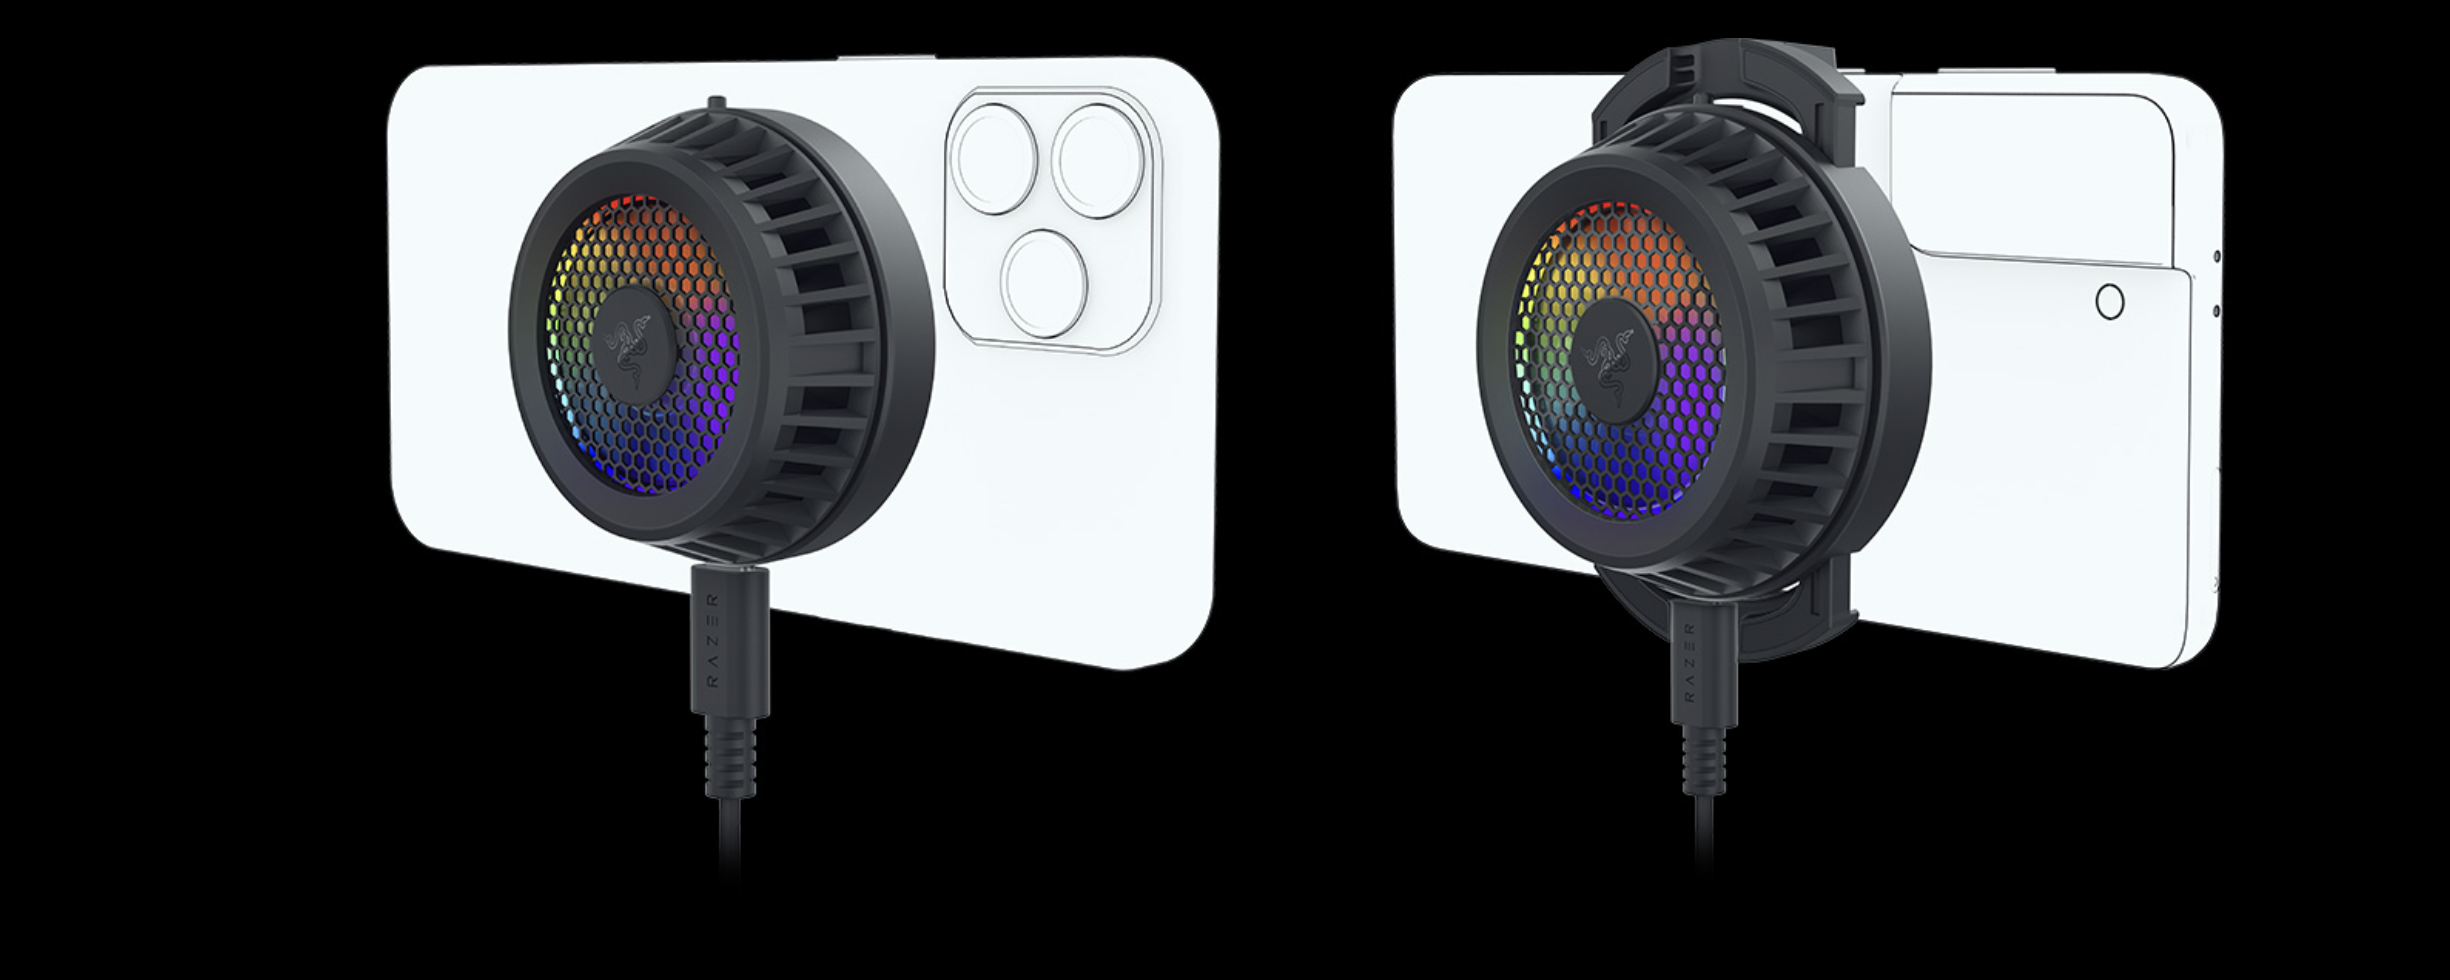 Razer выпустила 60-долларовый кулер MagSafe для iPhone с RGB-подсветкой (версия для Android тоже есть)